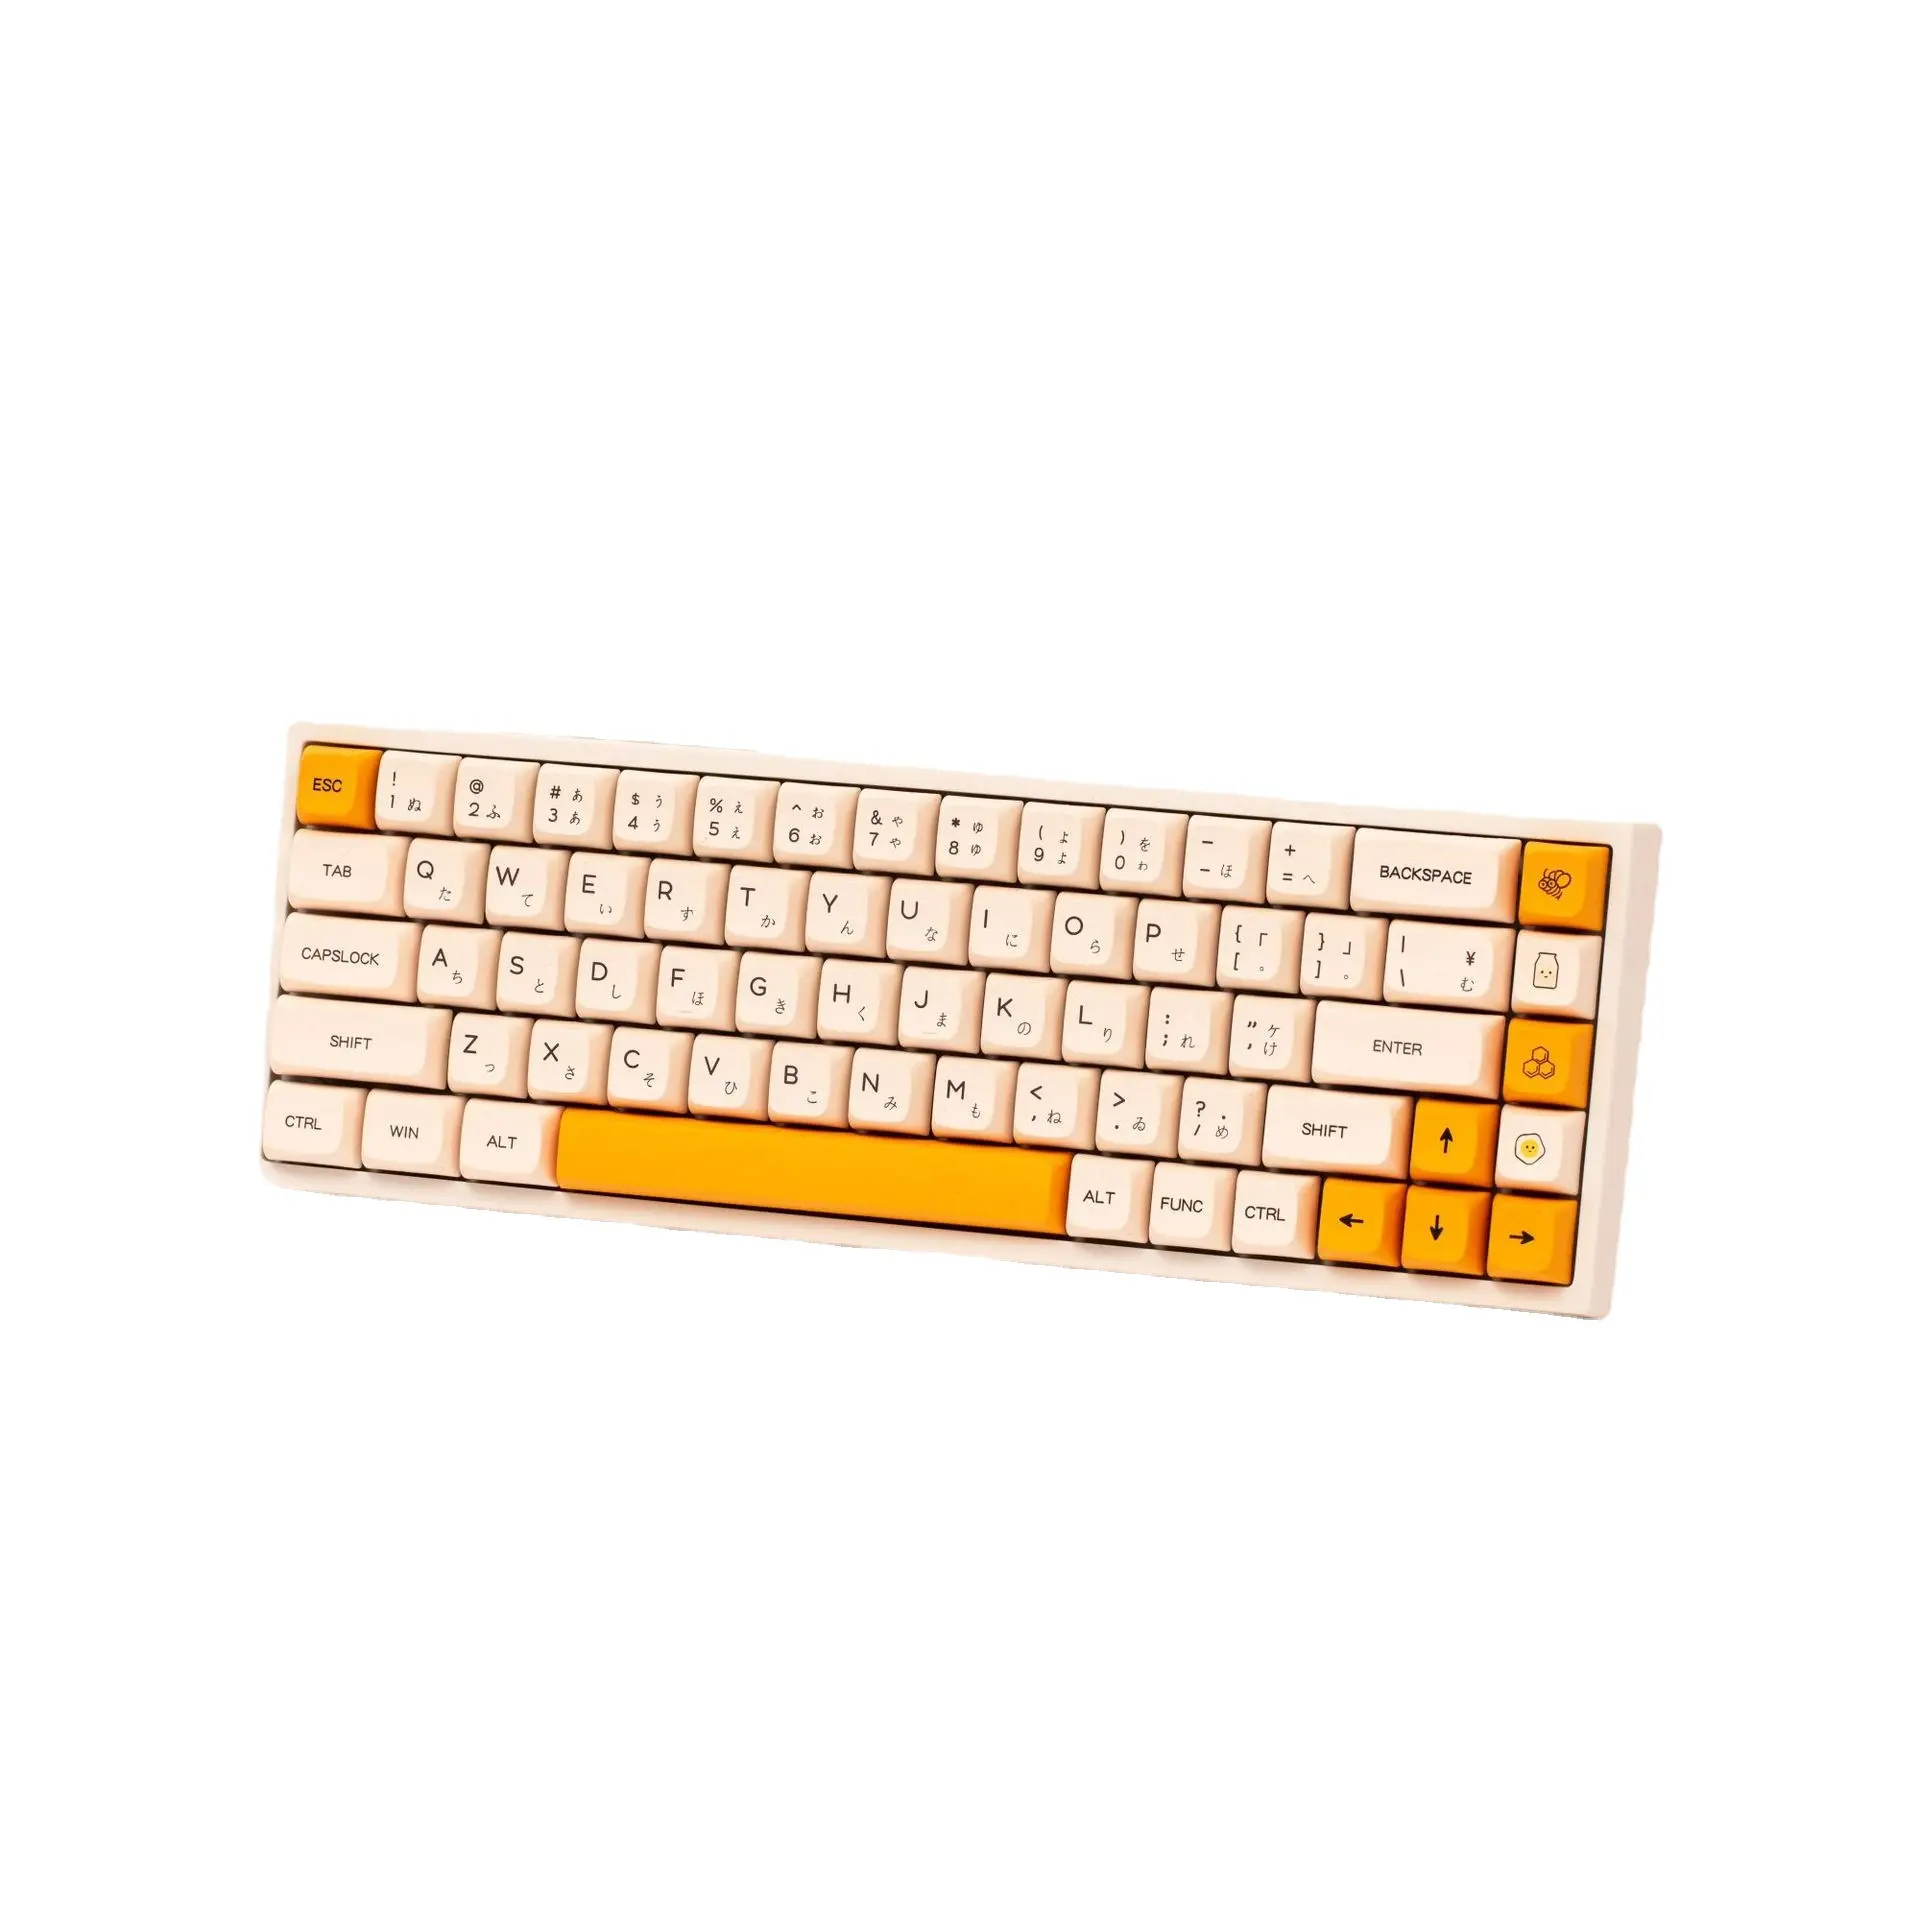 140 Keys PBT XDA profile Dye Sub Keycap Honey Milk Theme Japanese English Layout Keycaps For Mechanical Keyboards